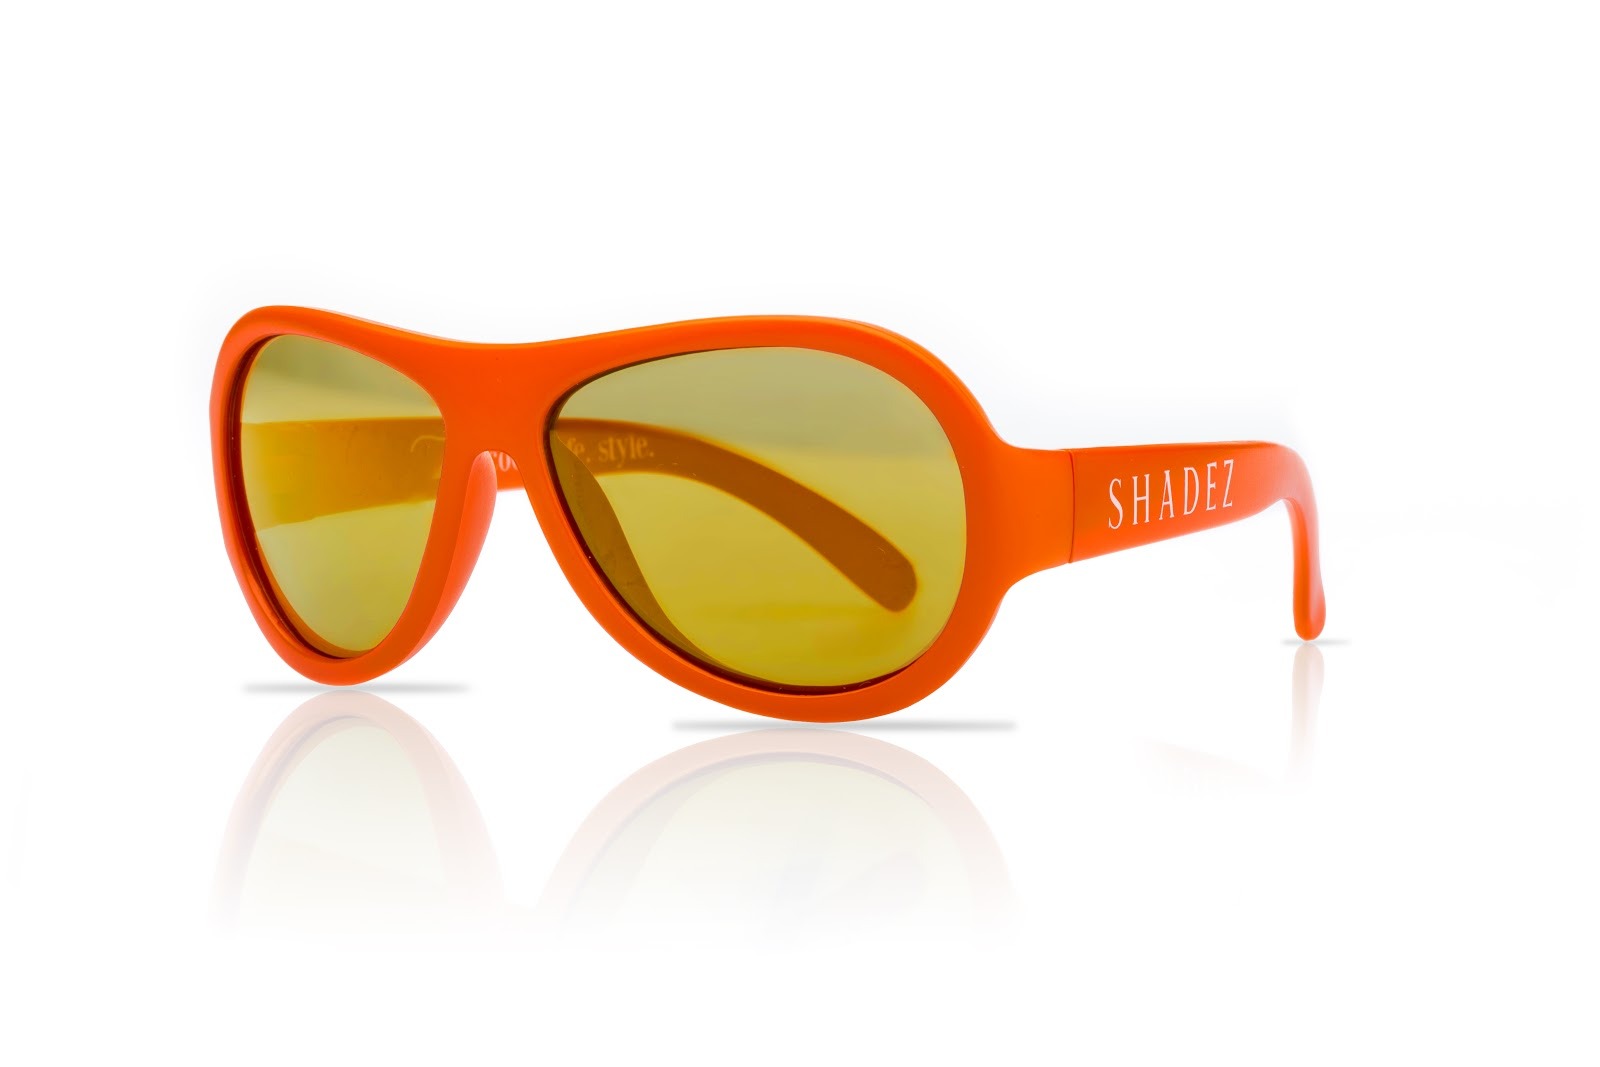 【瑞士SHADEZ】兒童太陽眼鏡〈平光款〉(年齡0-3)-SHZ31活力橘